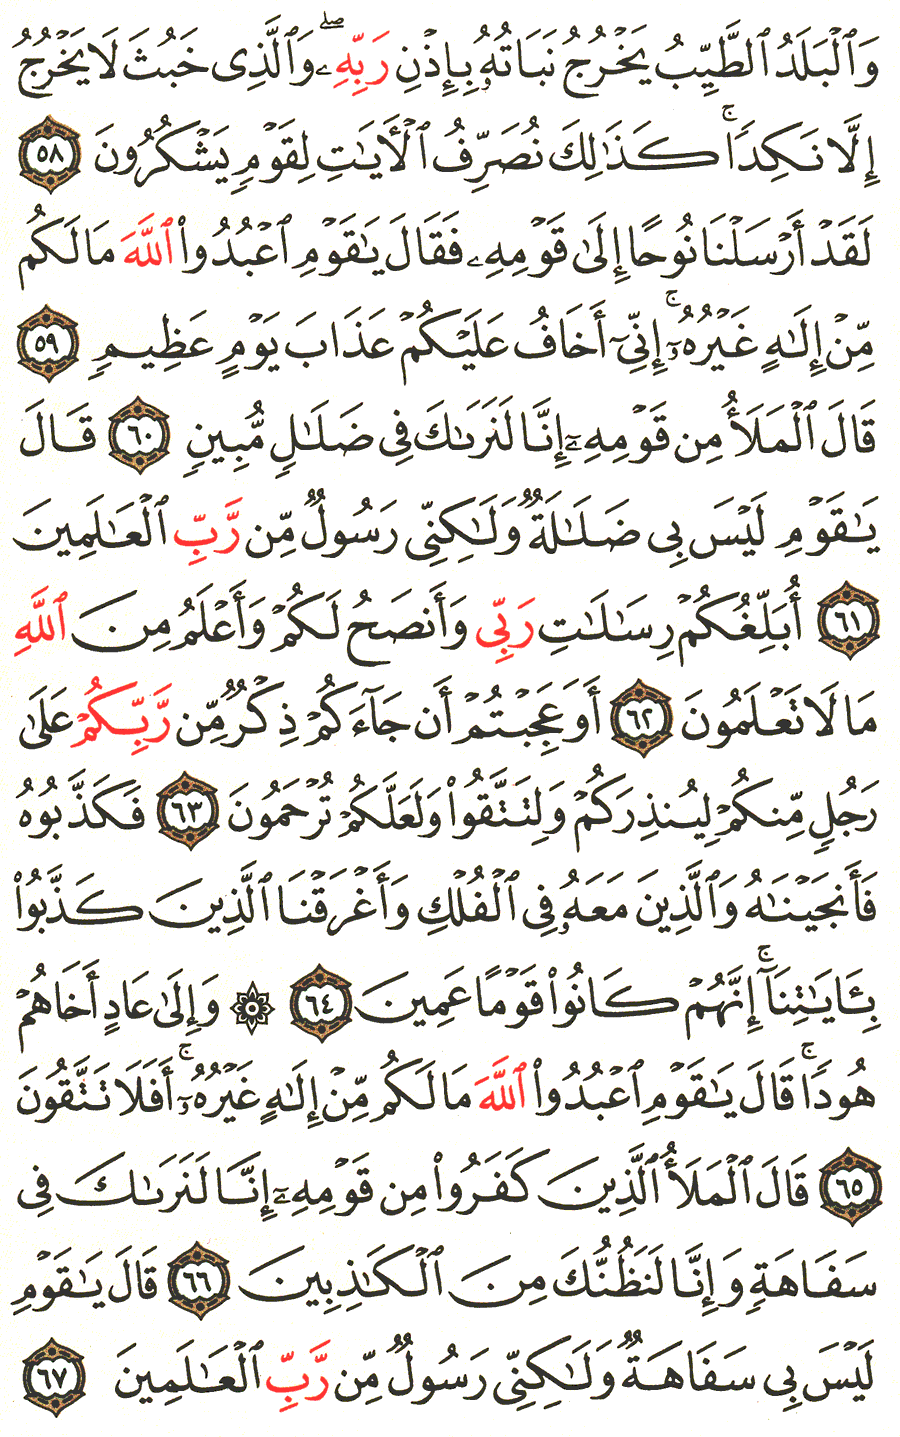 الصفحة 158 من القرآن الكريم